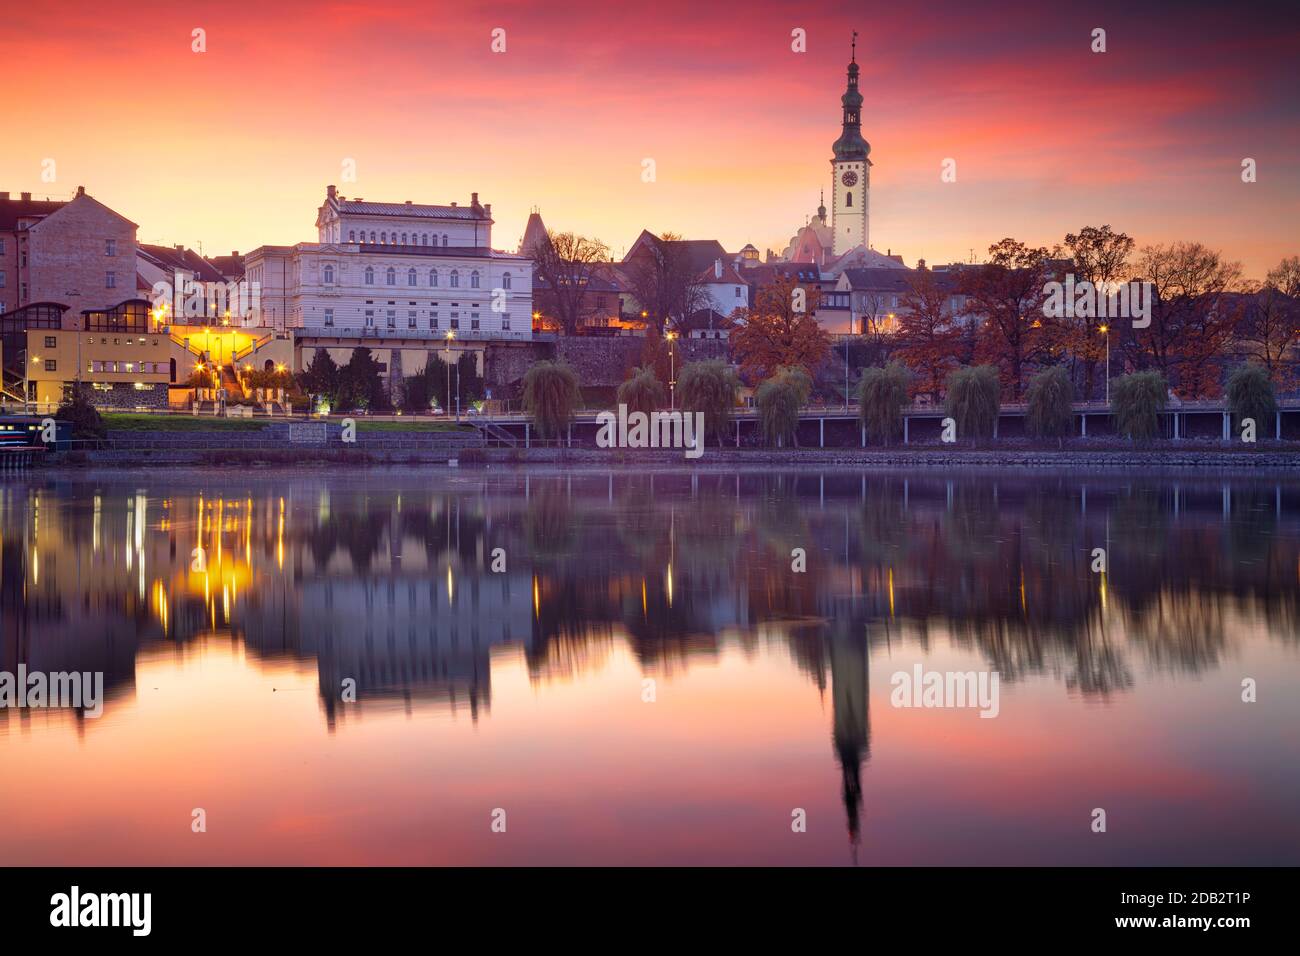 Tabor, República Checa. Paisaje urbano imagen de Tabor, República Checa en la hermosa puesta de sol de otoño. Foto de stock